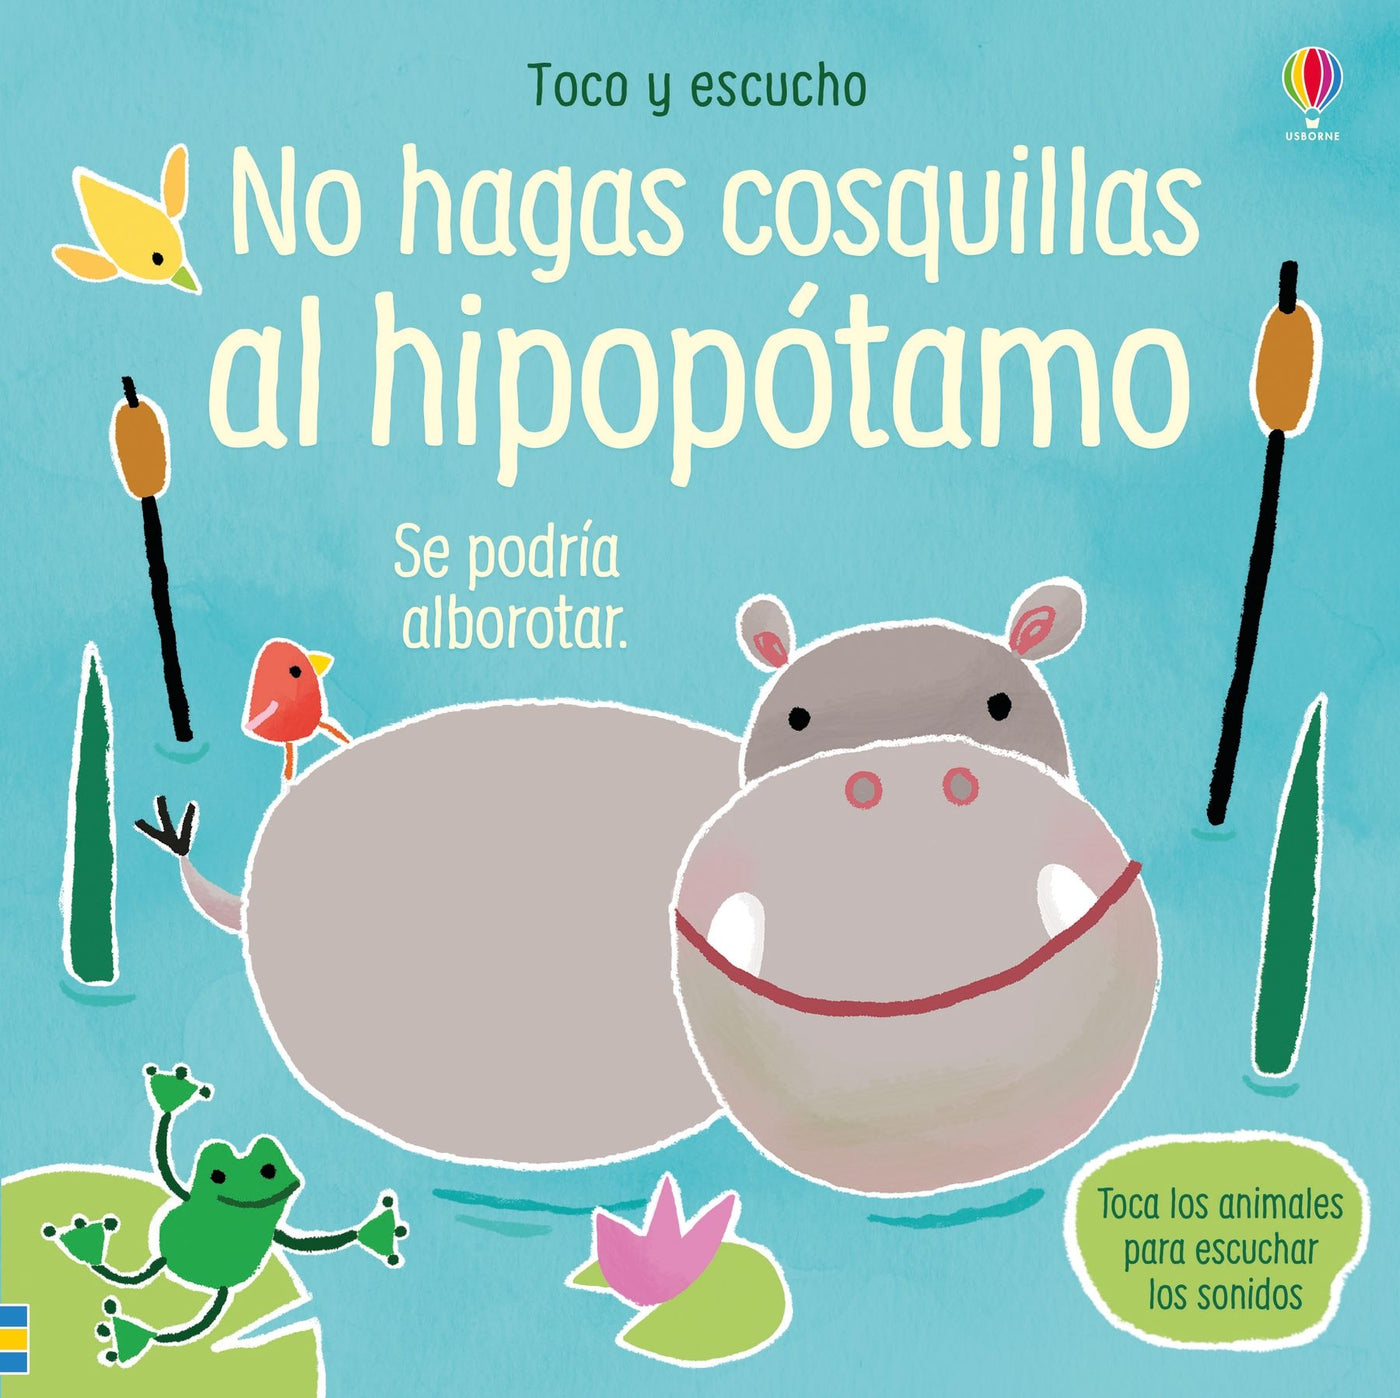 Toco y escucho - No hagas cosquillas al hipopótamo - Libro sonidos